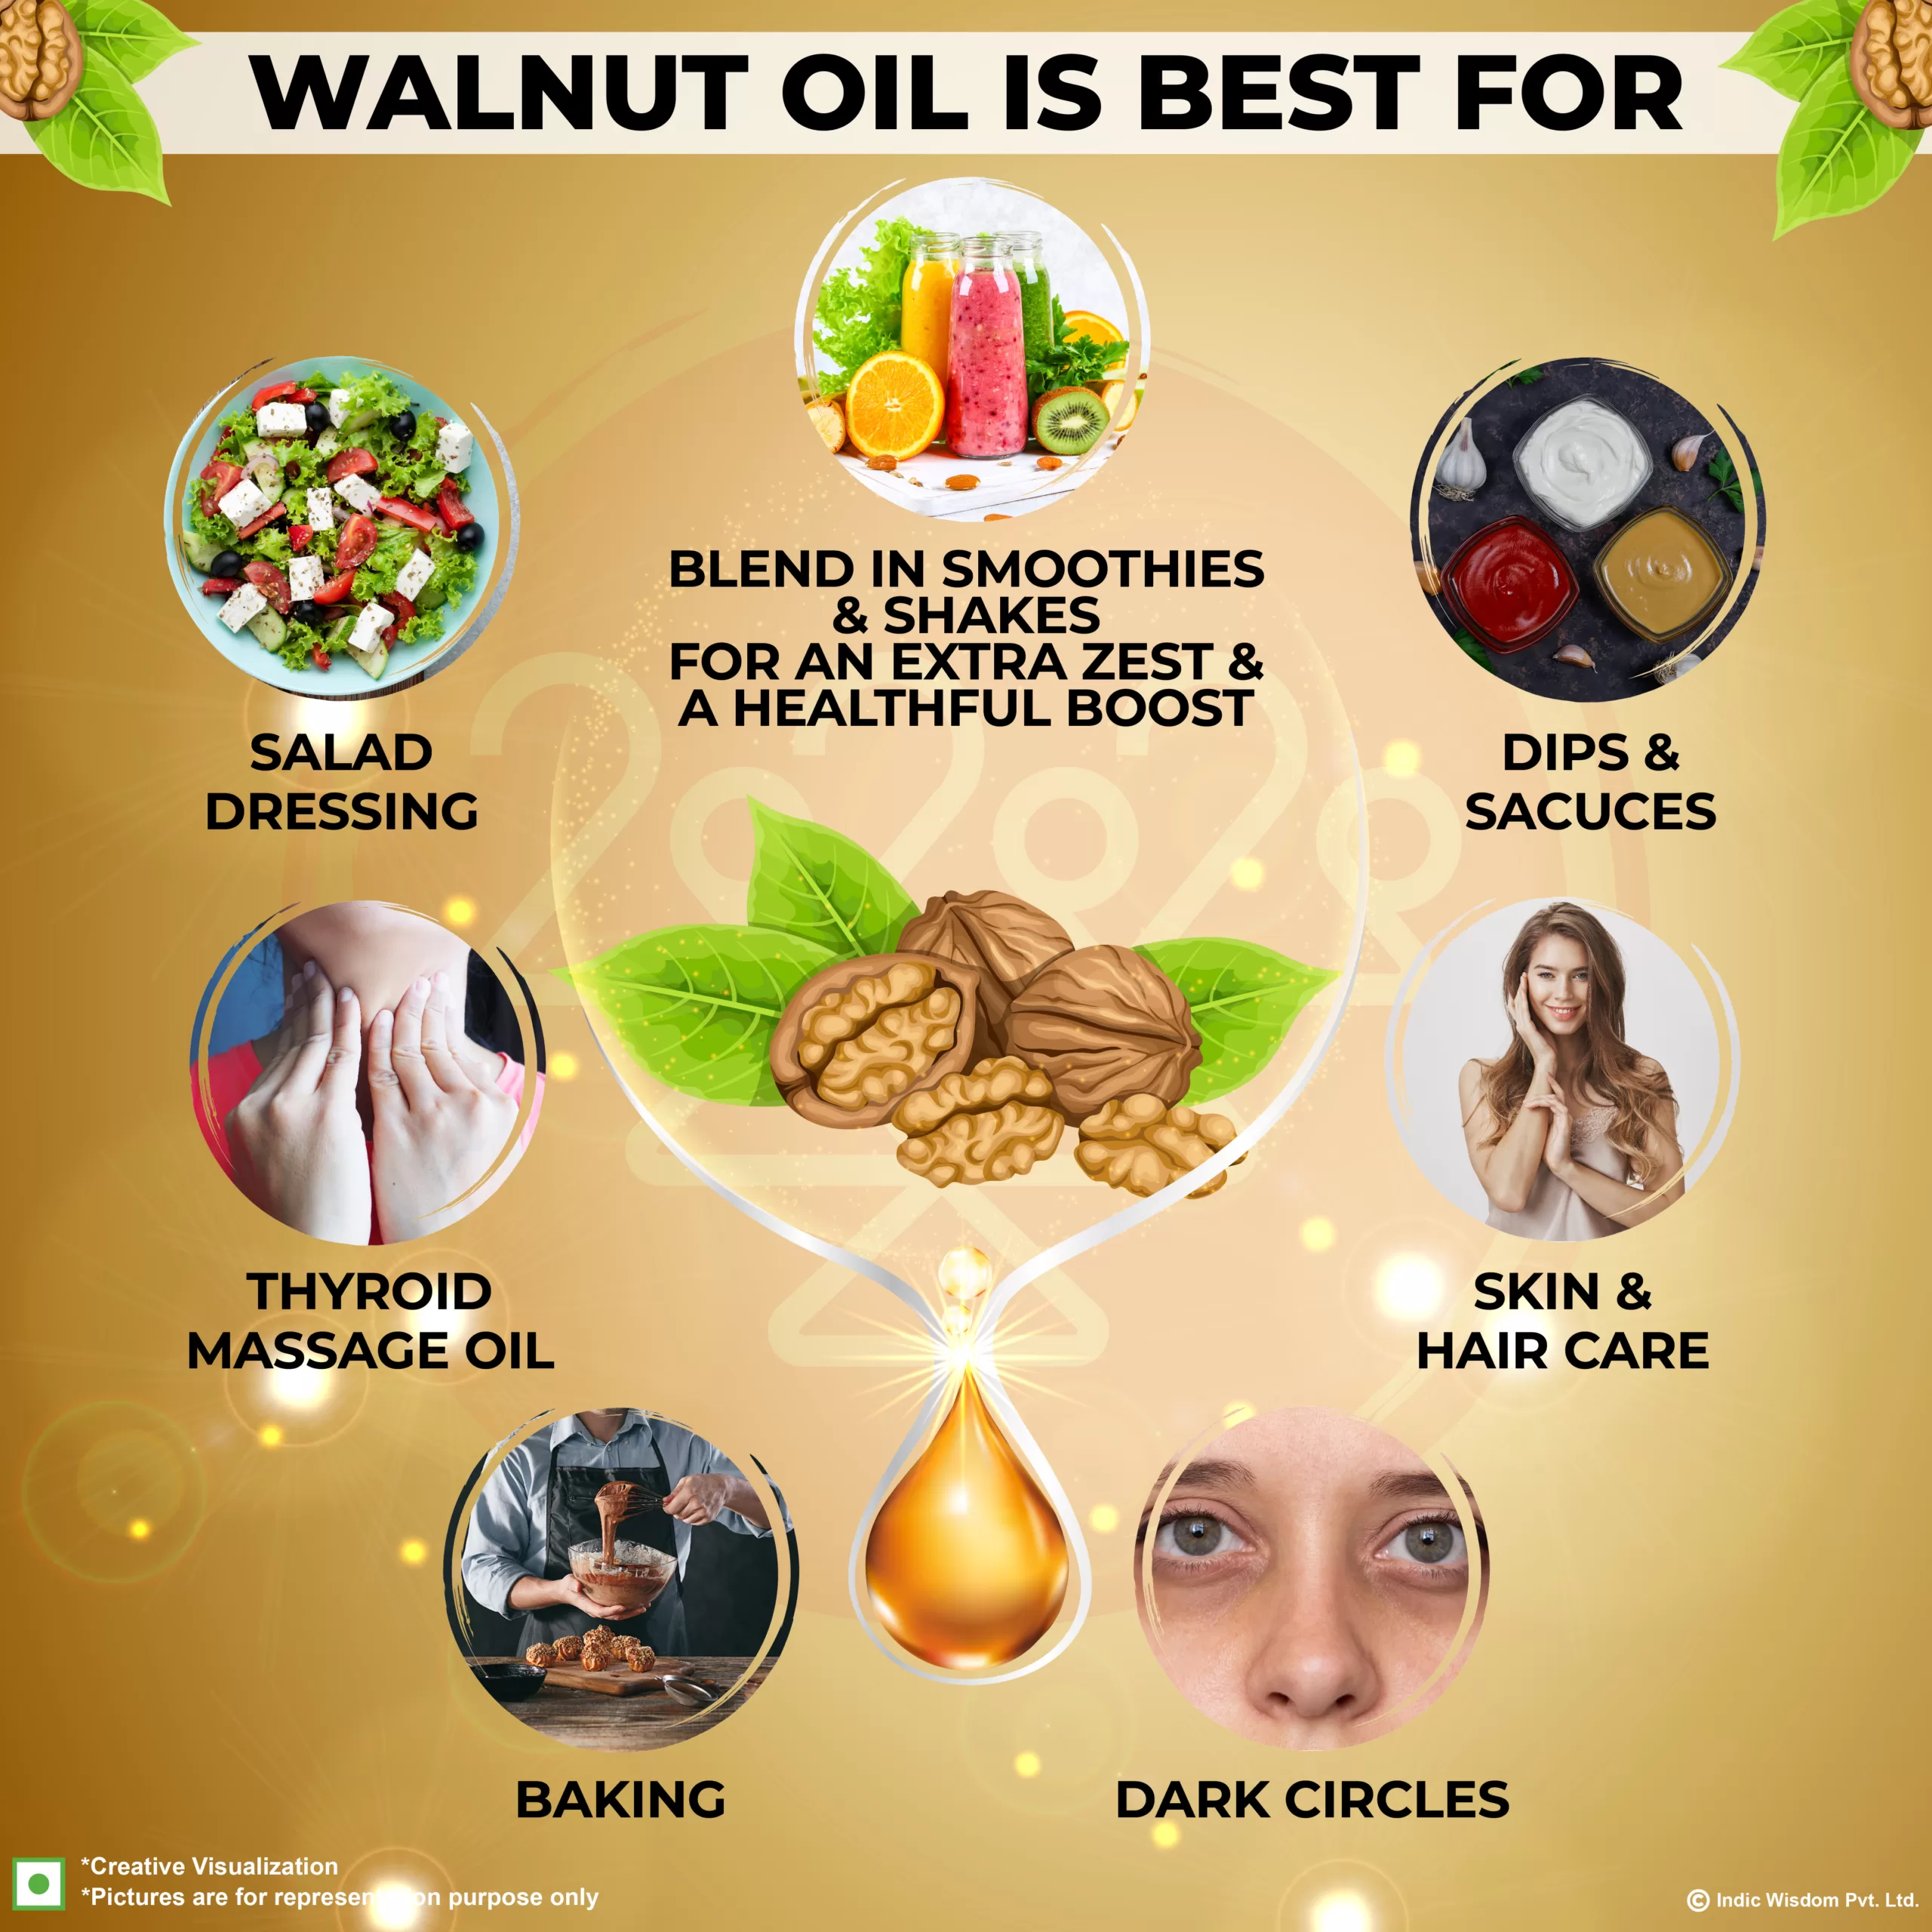 Benefits of wood pressed walnut oil